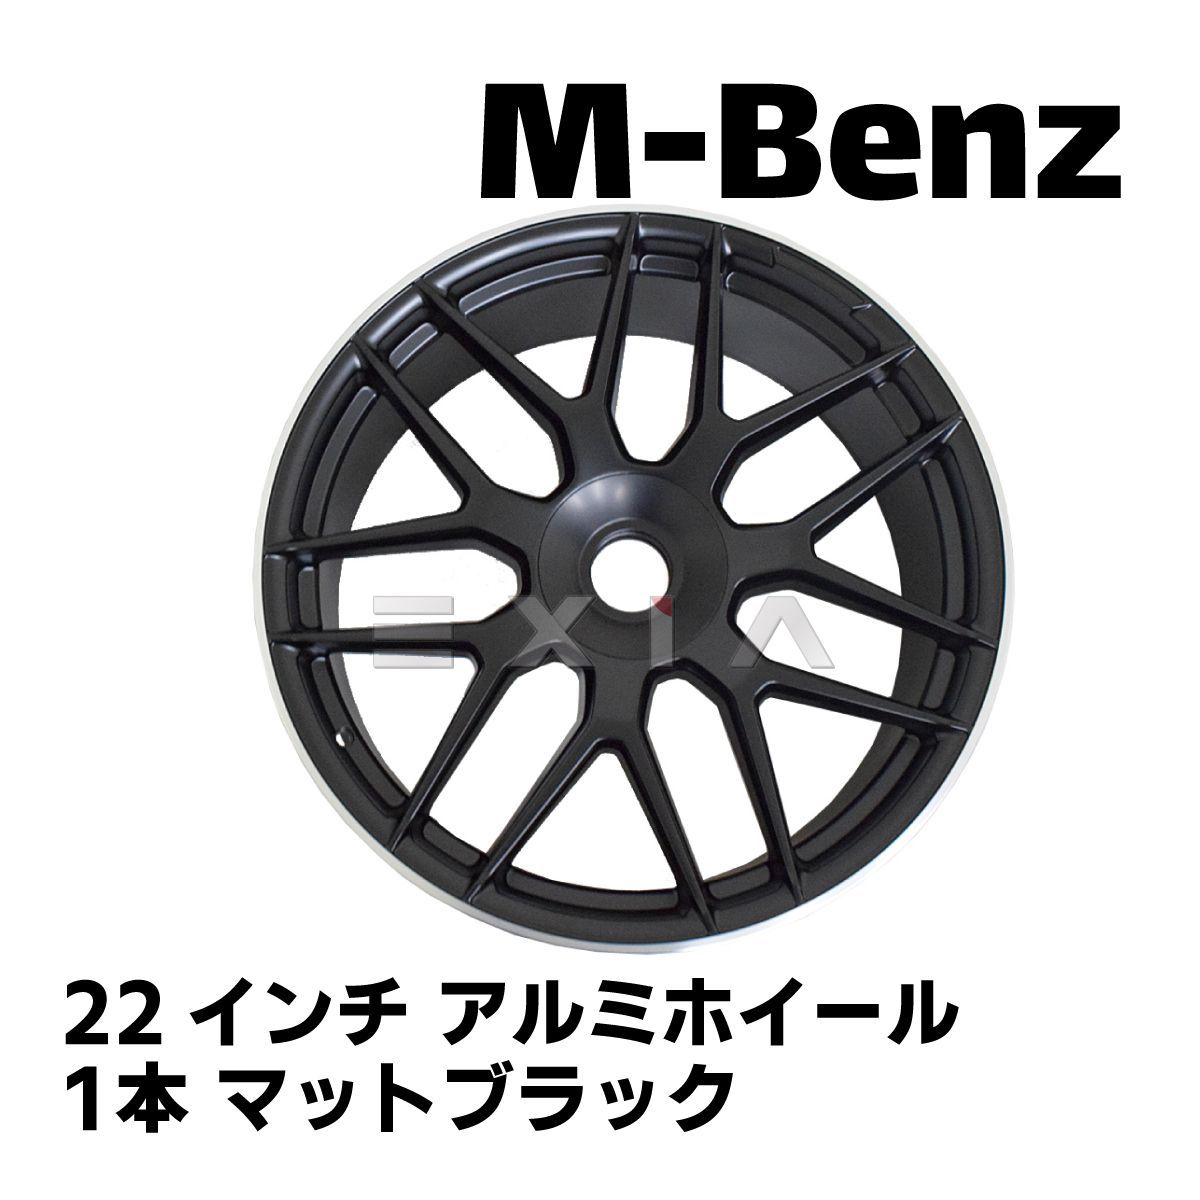 Mercedes-Benz W222 W223 W221 22インチ 10.0J アルミ ホイール 1本 マットブラック 5H 112 S11M S63type ベンツ Sクラス 国内発送 即納 足回り 補修 10 .